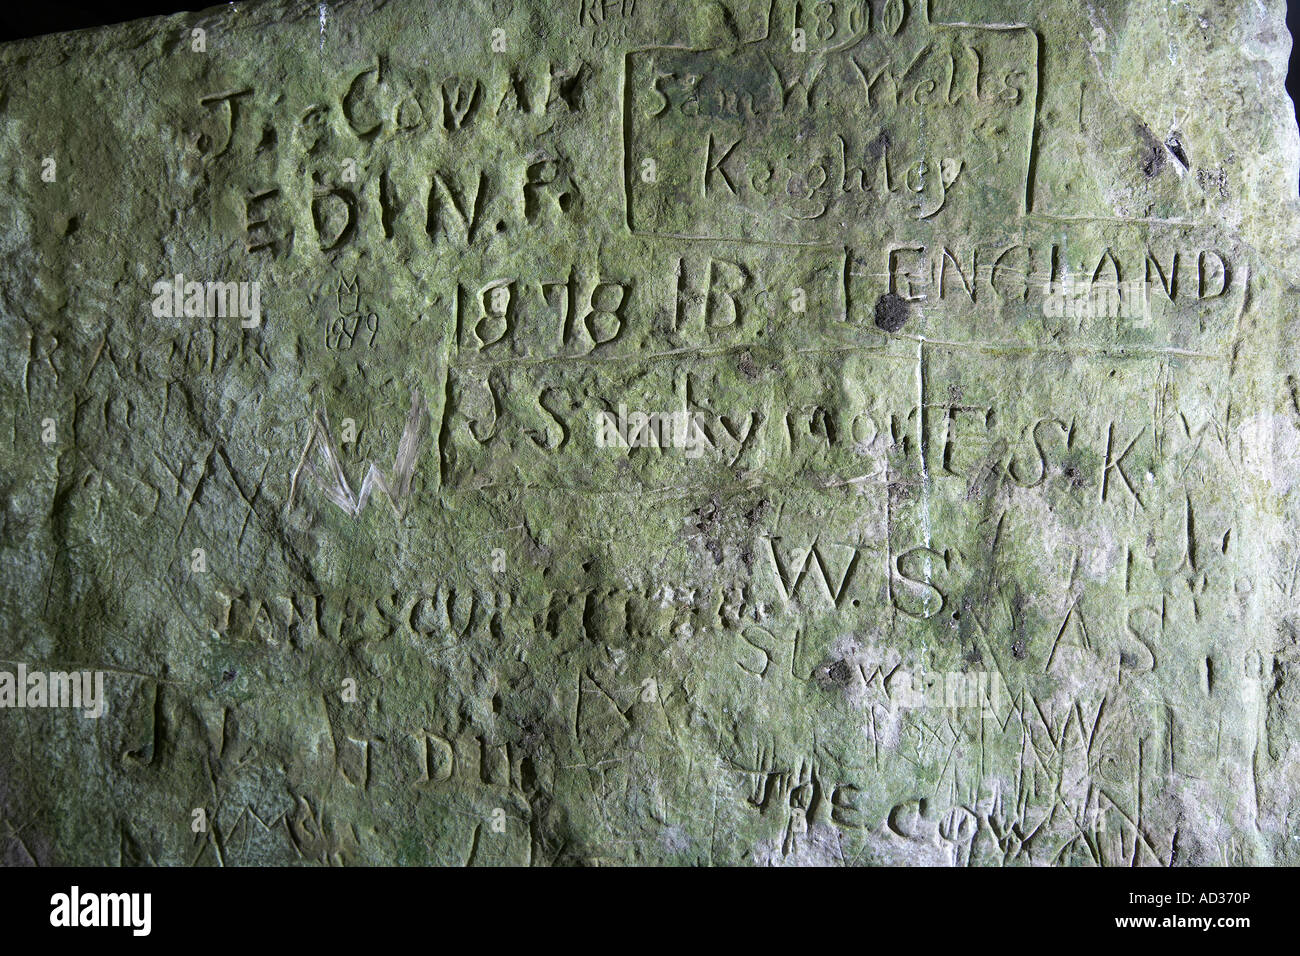 Graffiti all'interno della sepoltura del neolitico Unstan chambered cairn Isole Orcadi Scozia UK Foto Stock